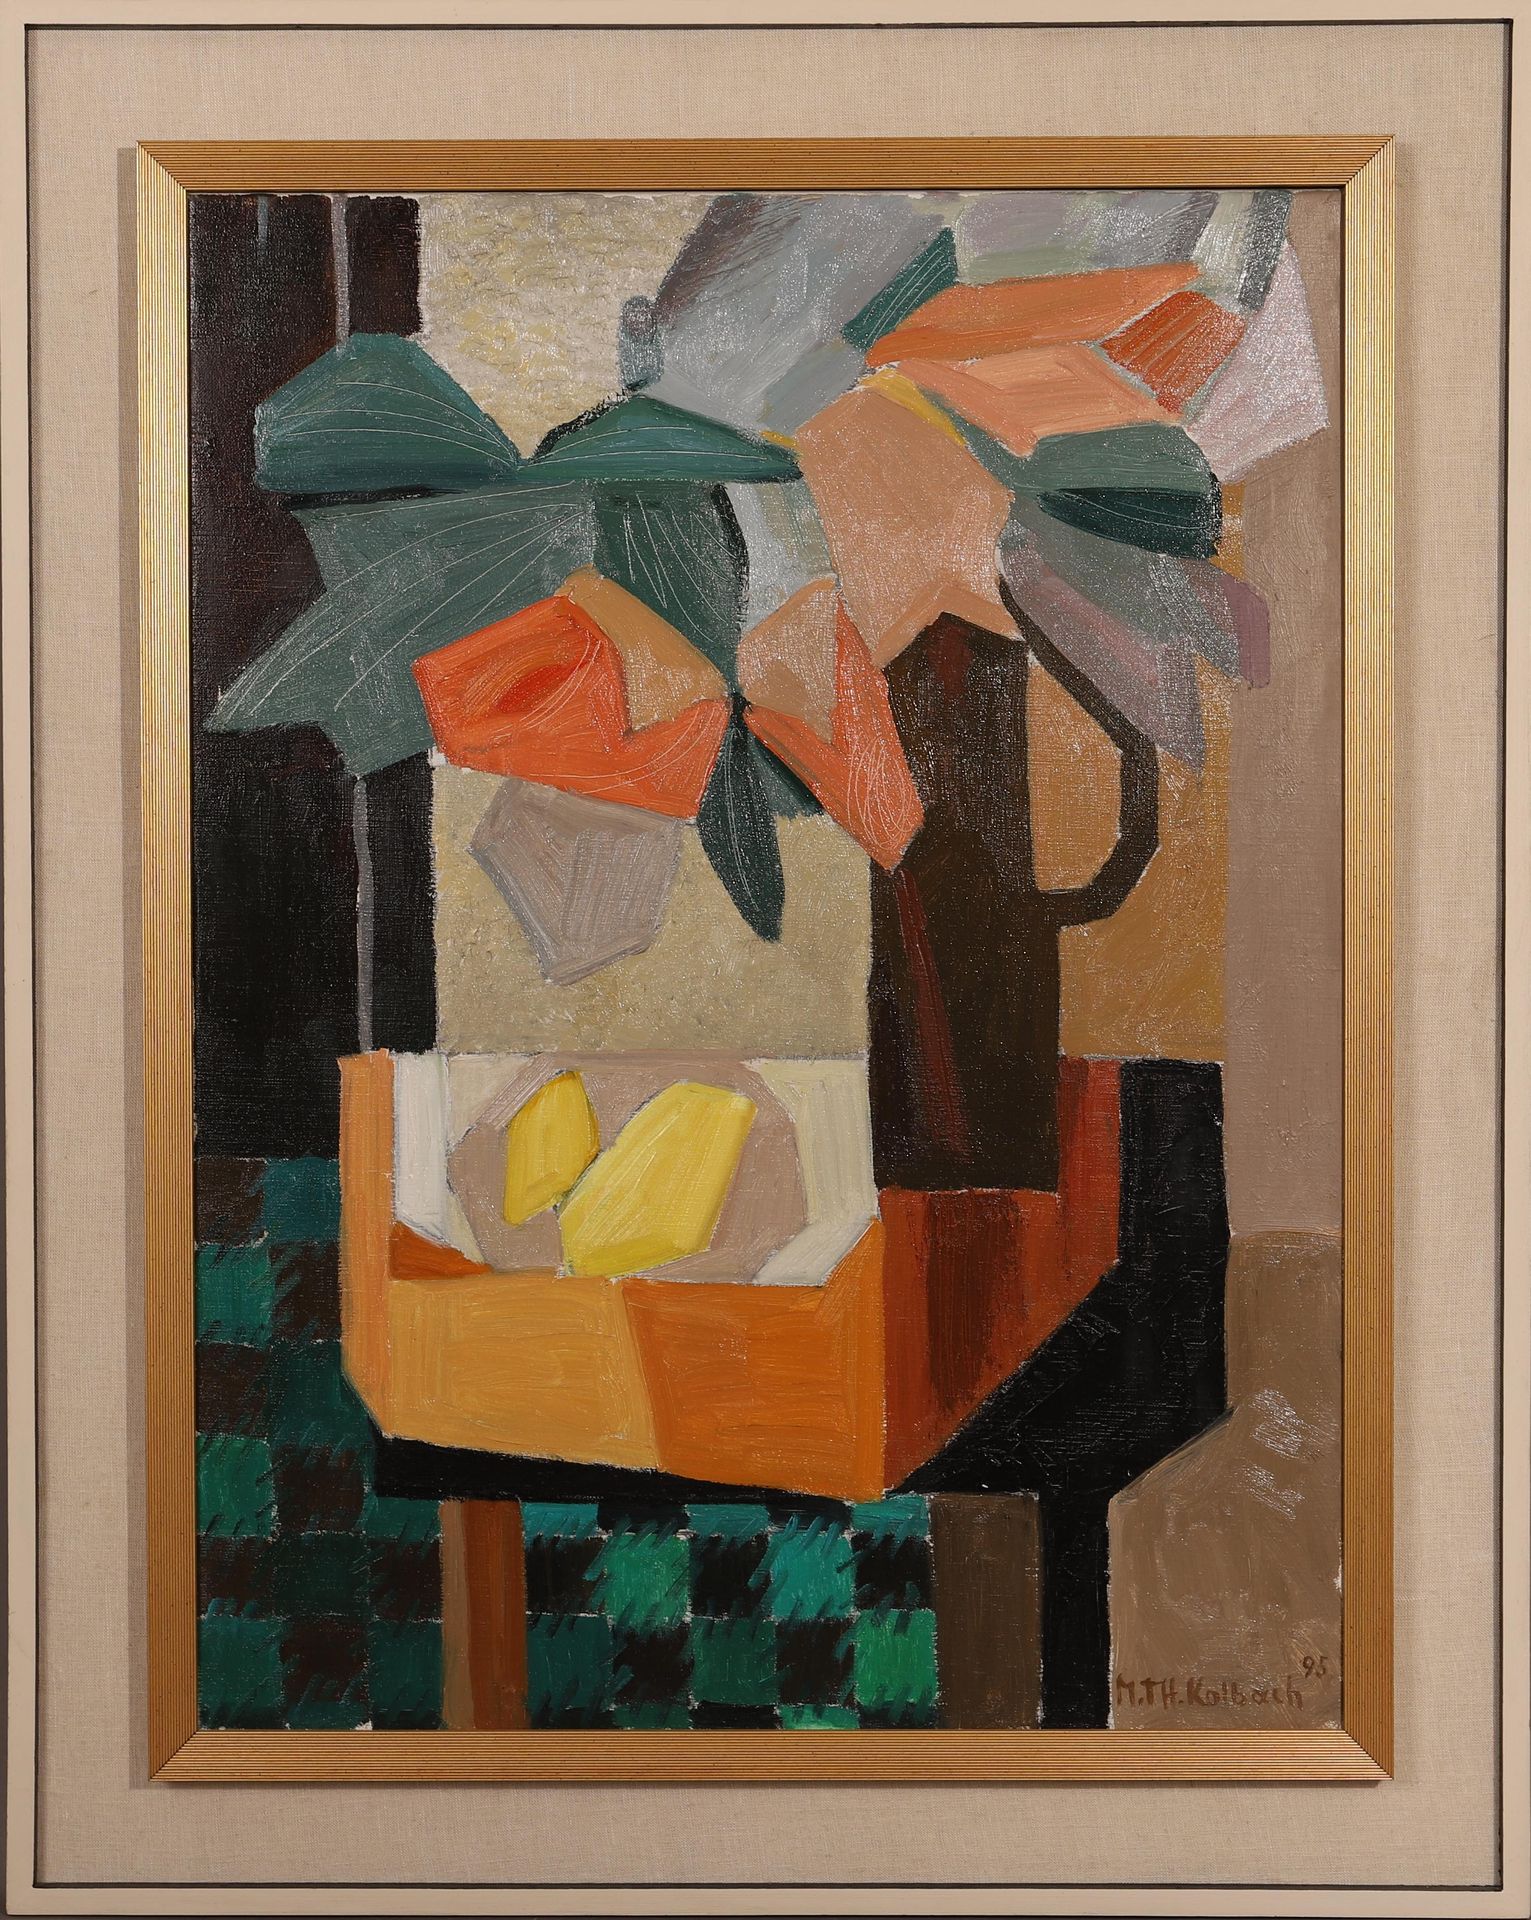 Null "Citrons" de Marie-Thérèse KOLBACH (1918-2009)

Artiste peintre Luxembourge&hellip;